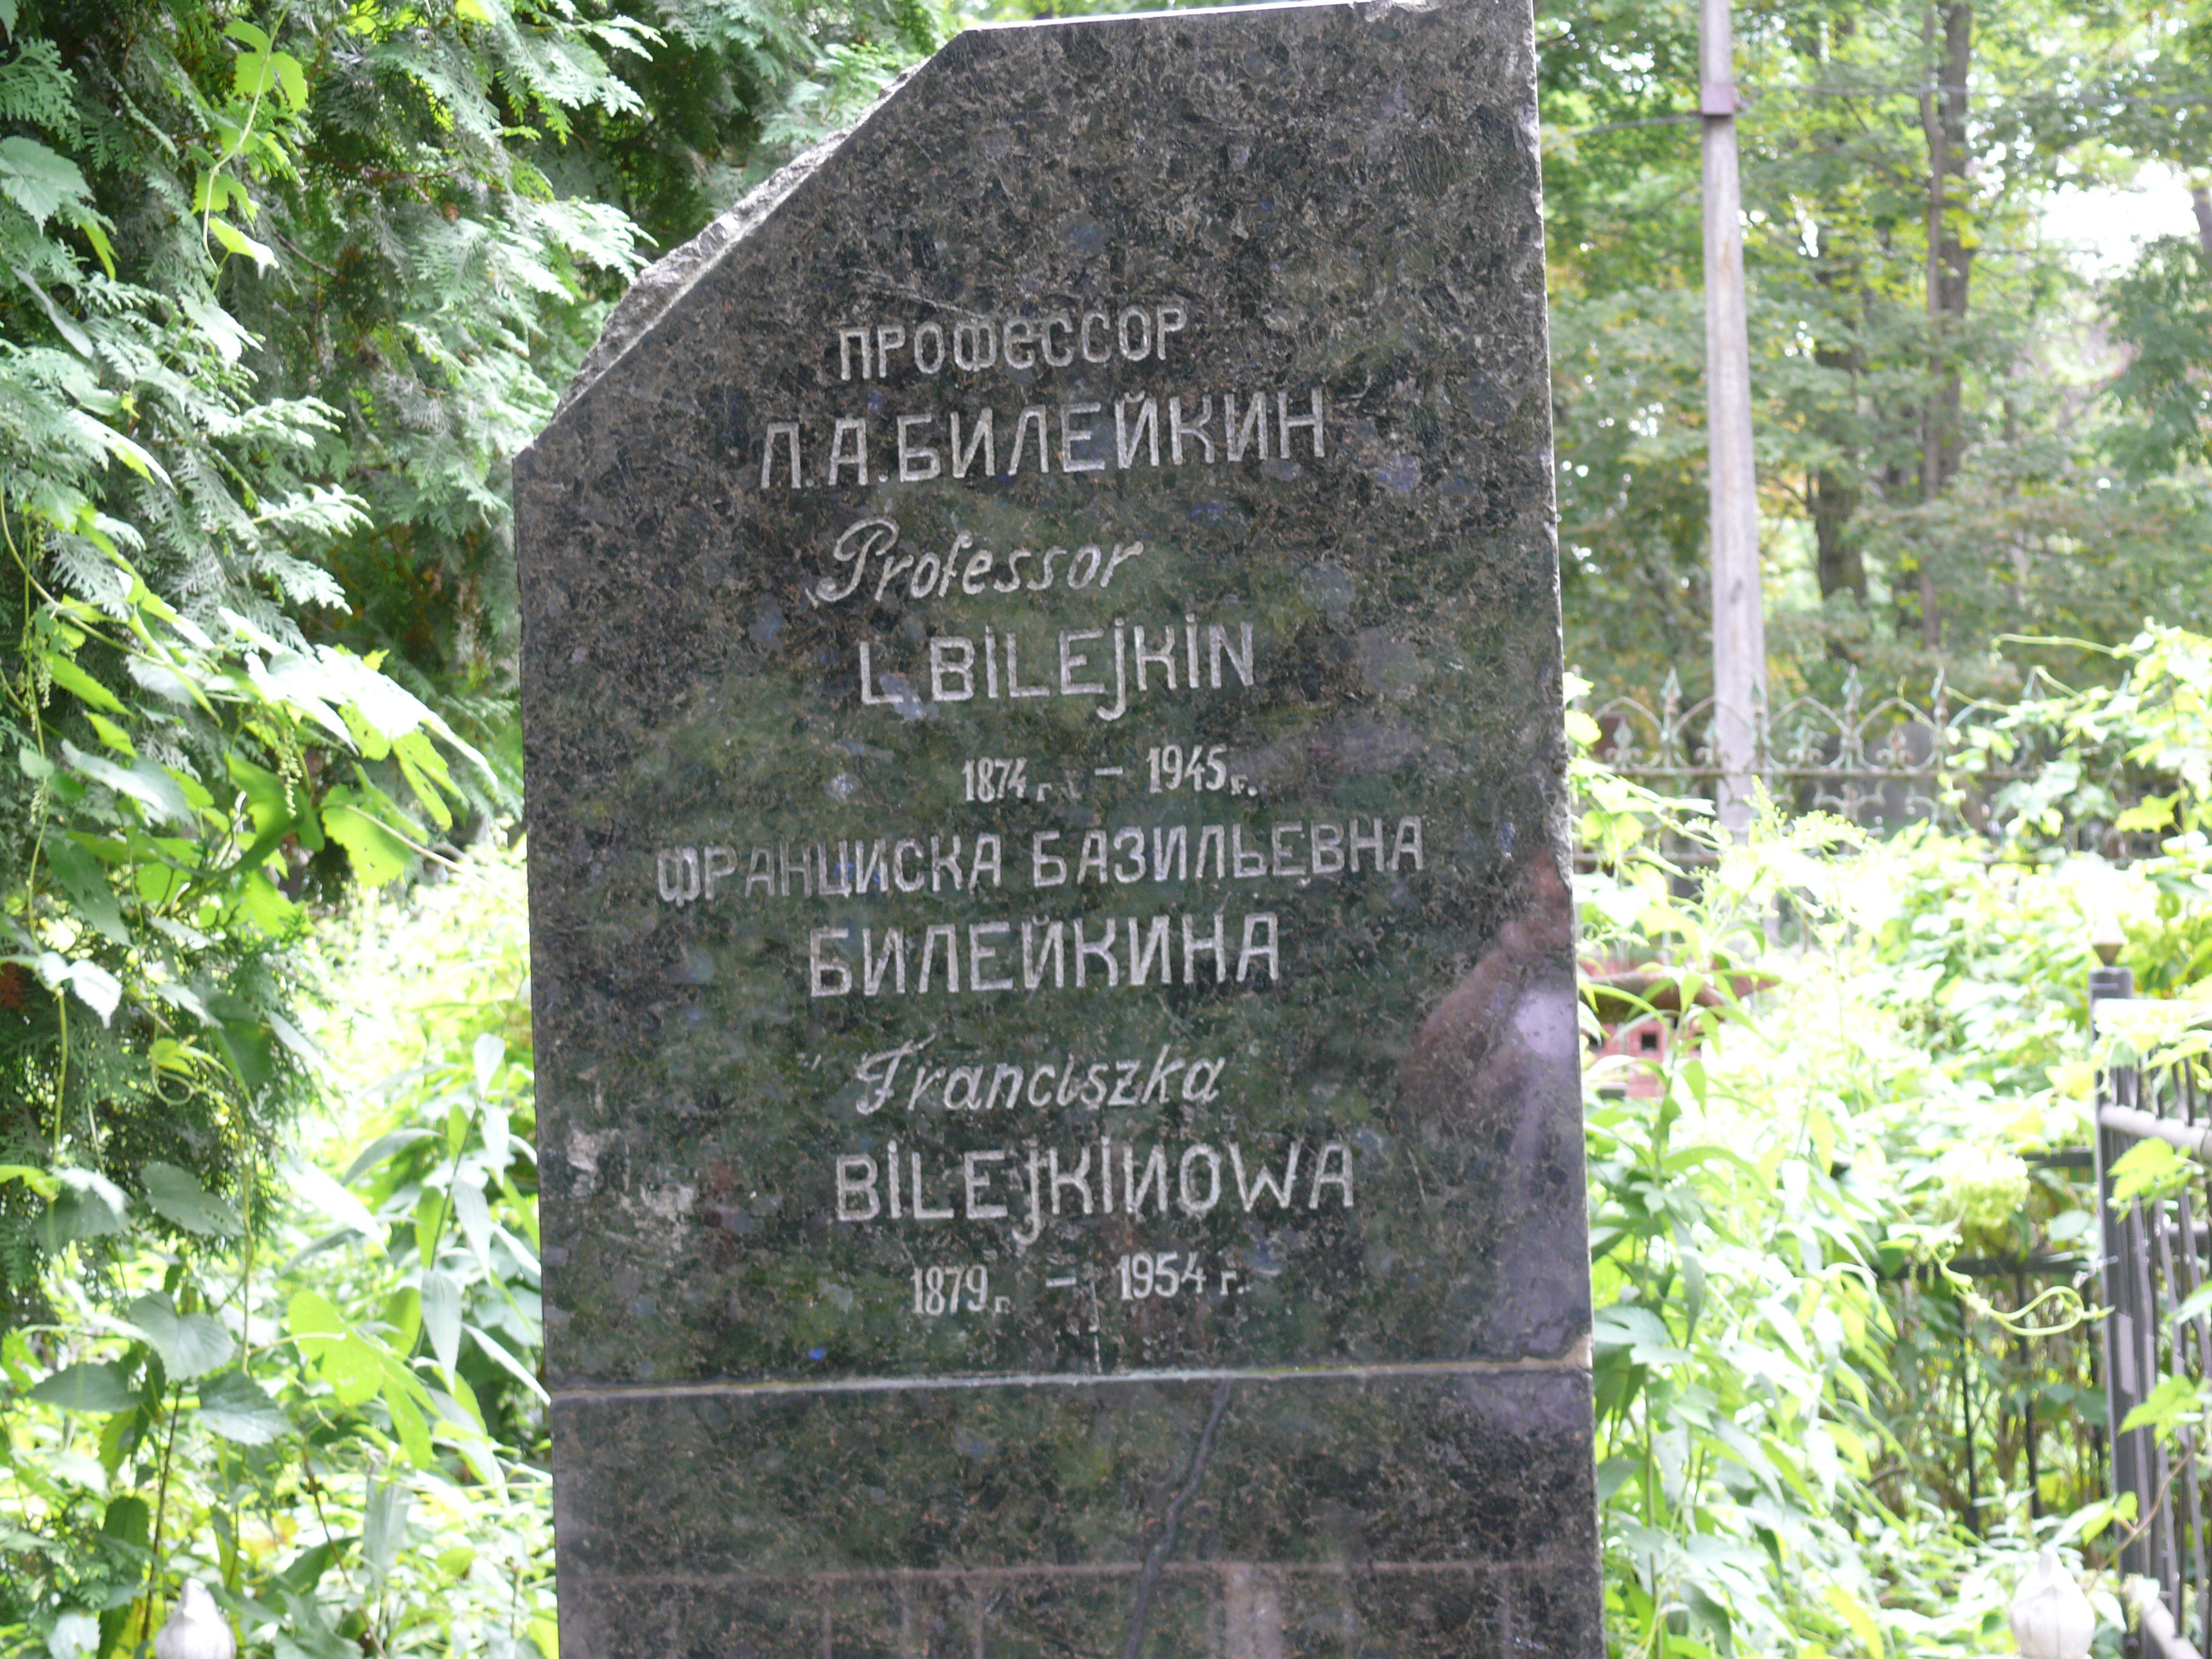 Napis z nagrobka Lwa Bilejkina, Franciszki Bilejkin